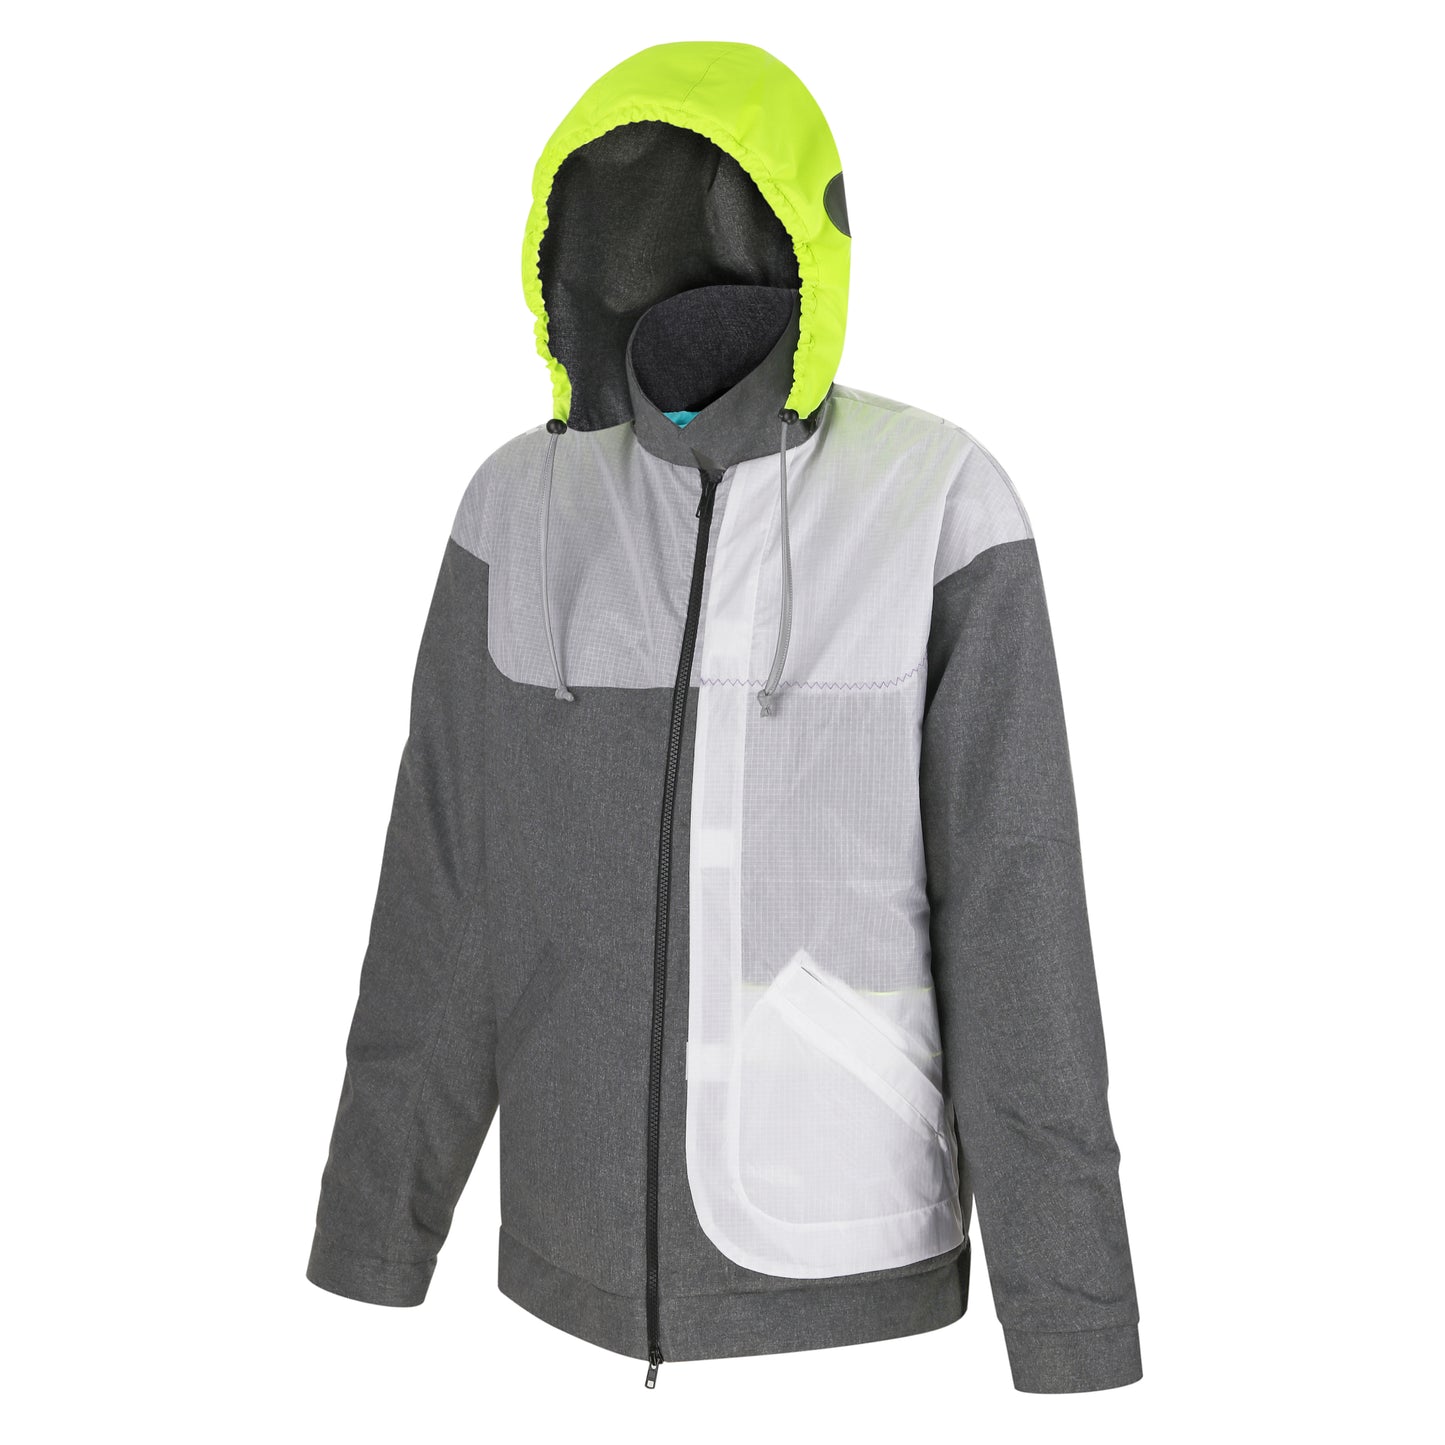 Waterproof and windproof rain jacket for men & women